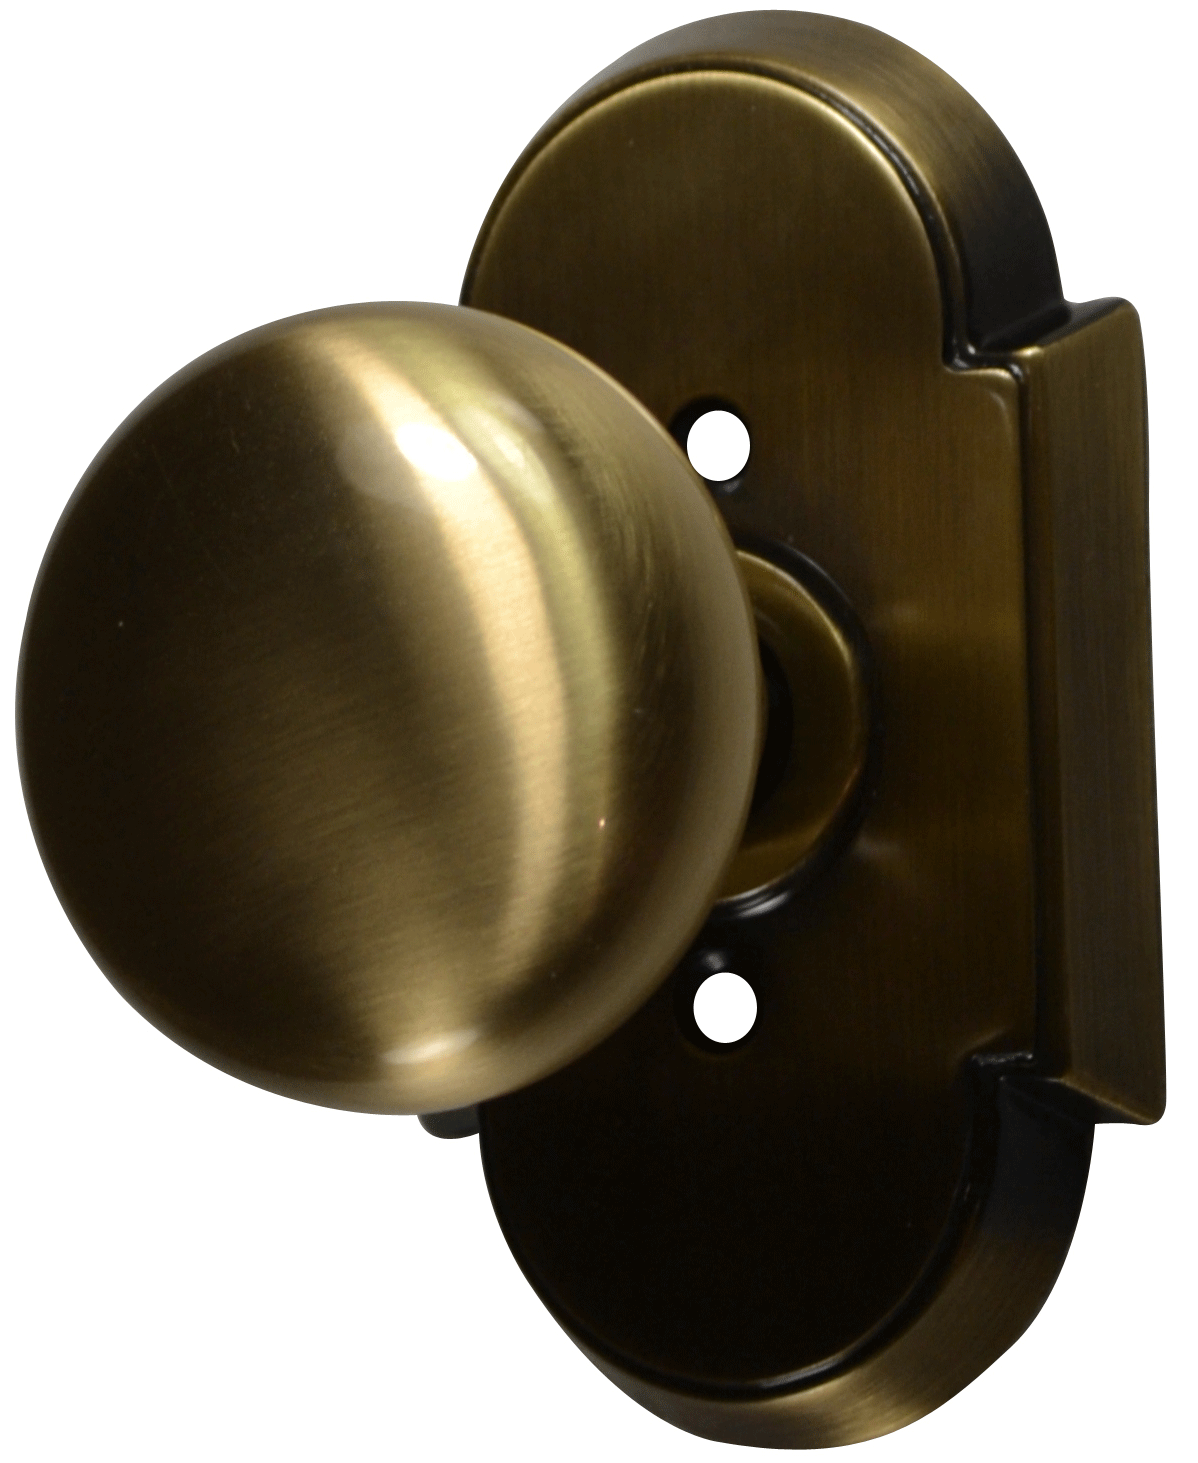 brass door knob photo - 13